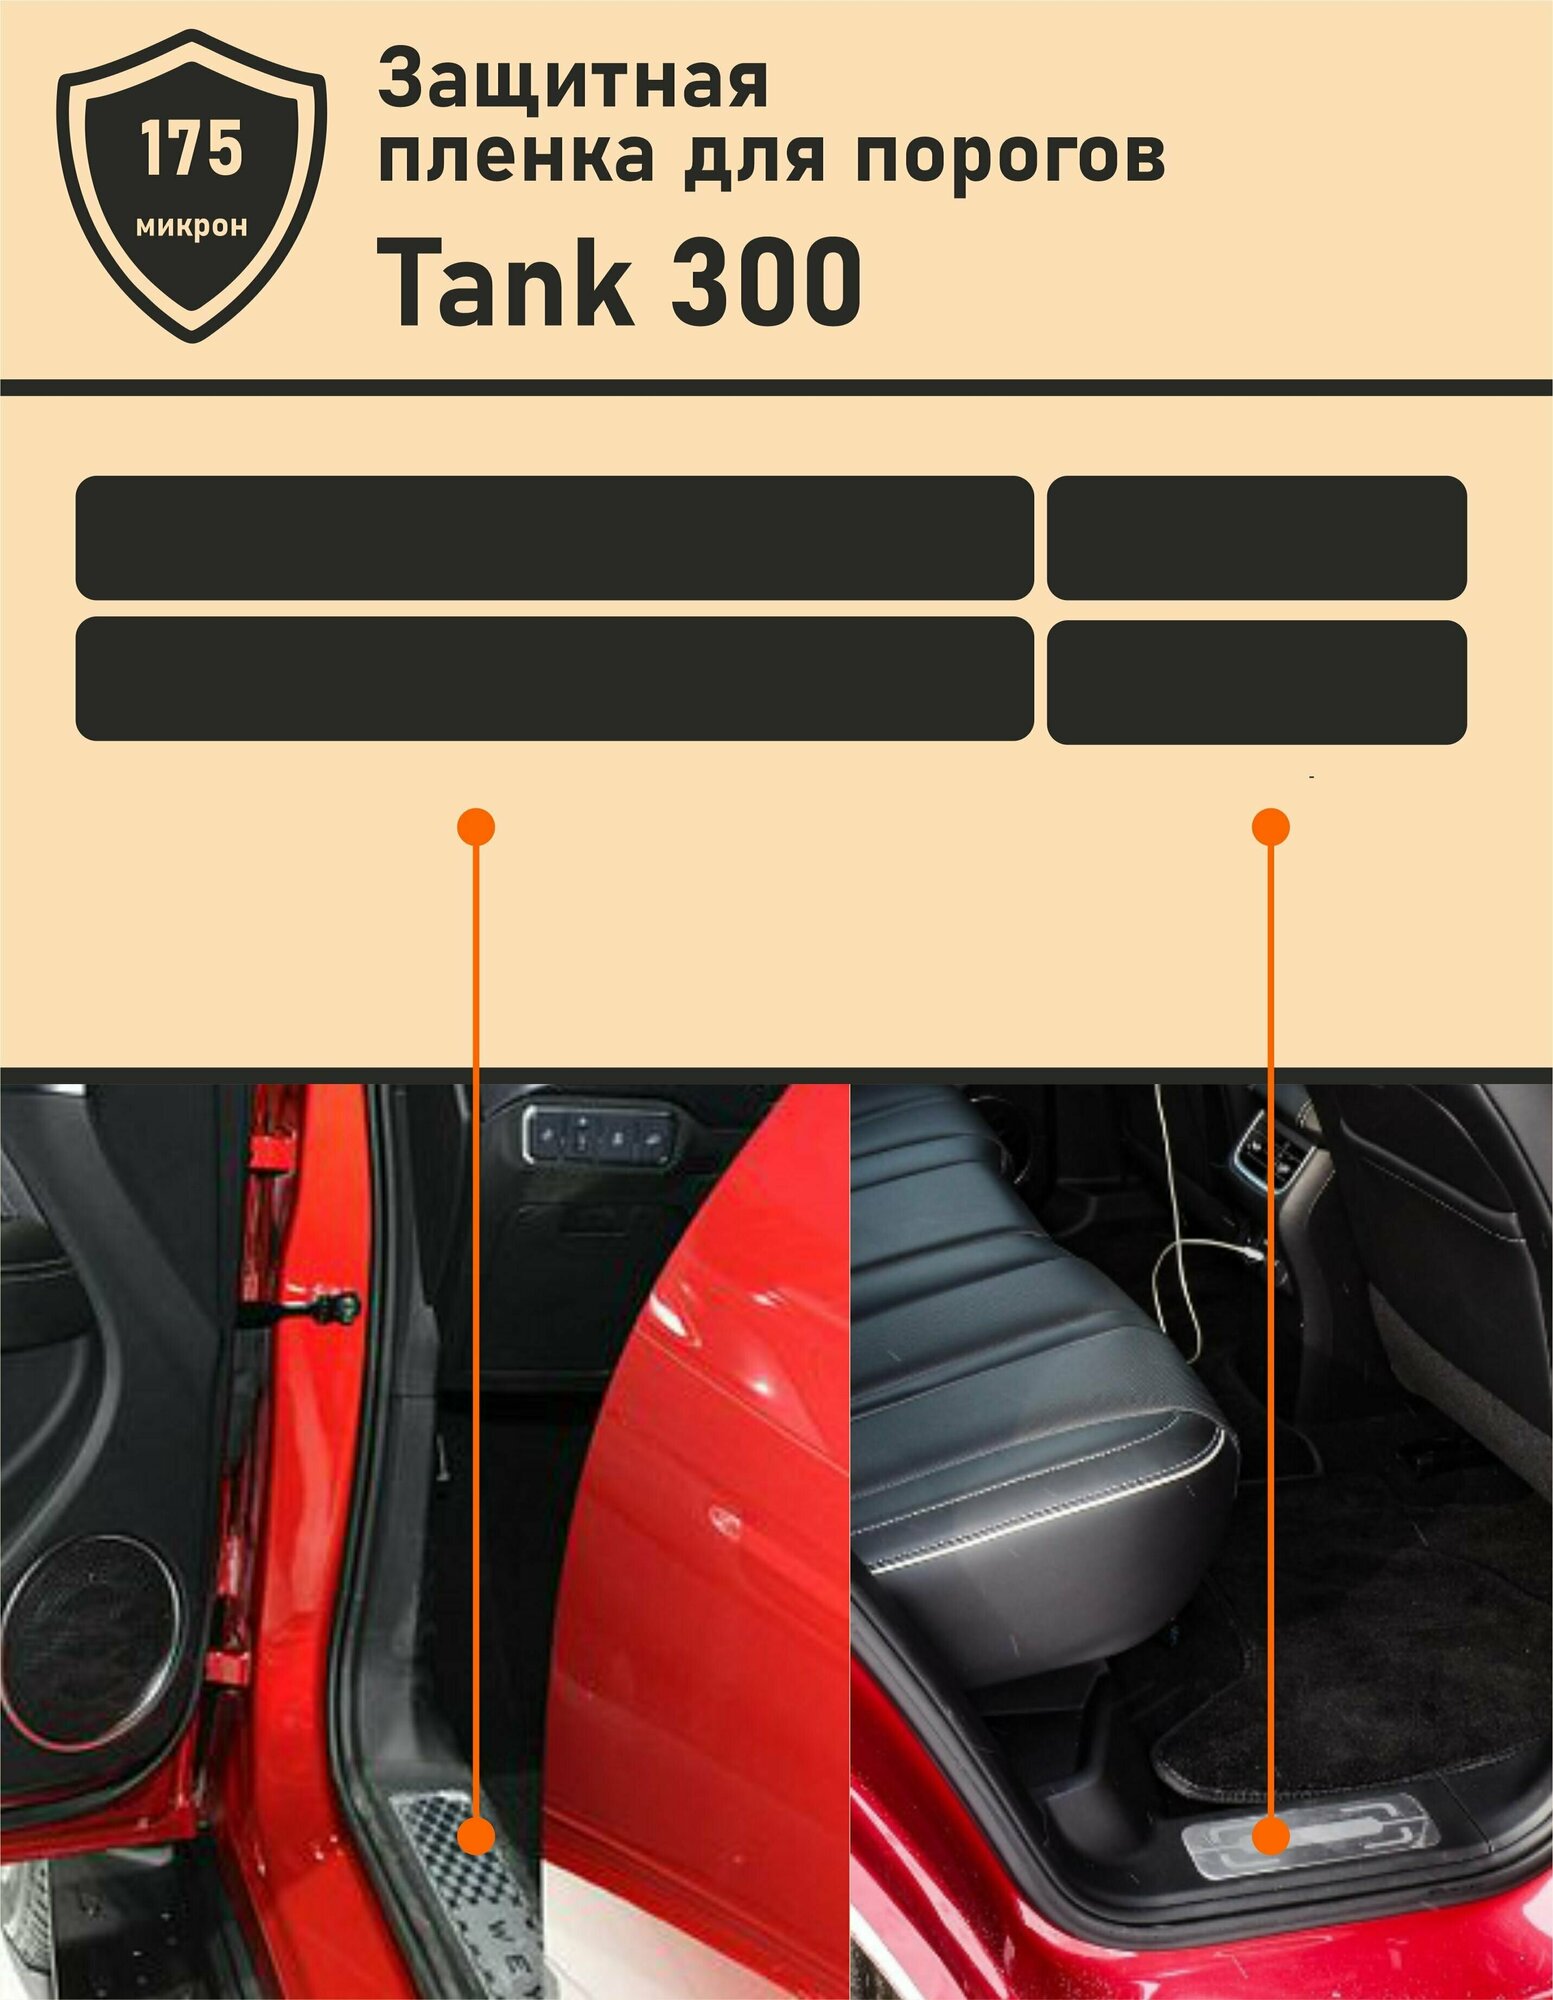 TANK 300/ Комплект защитных пленок для дверных проемов порогов